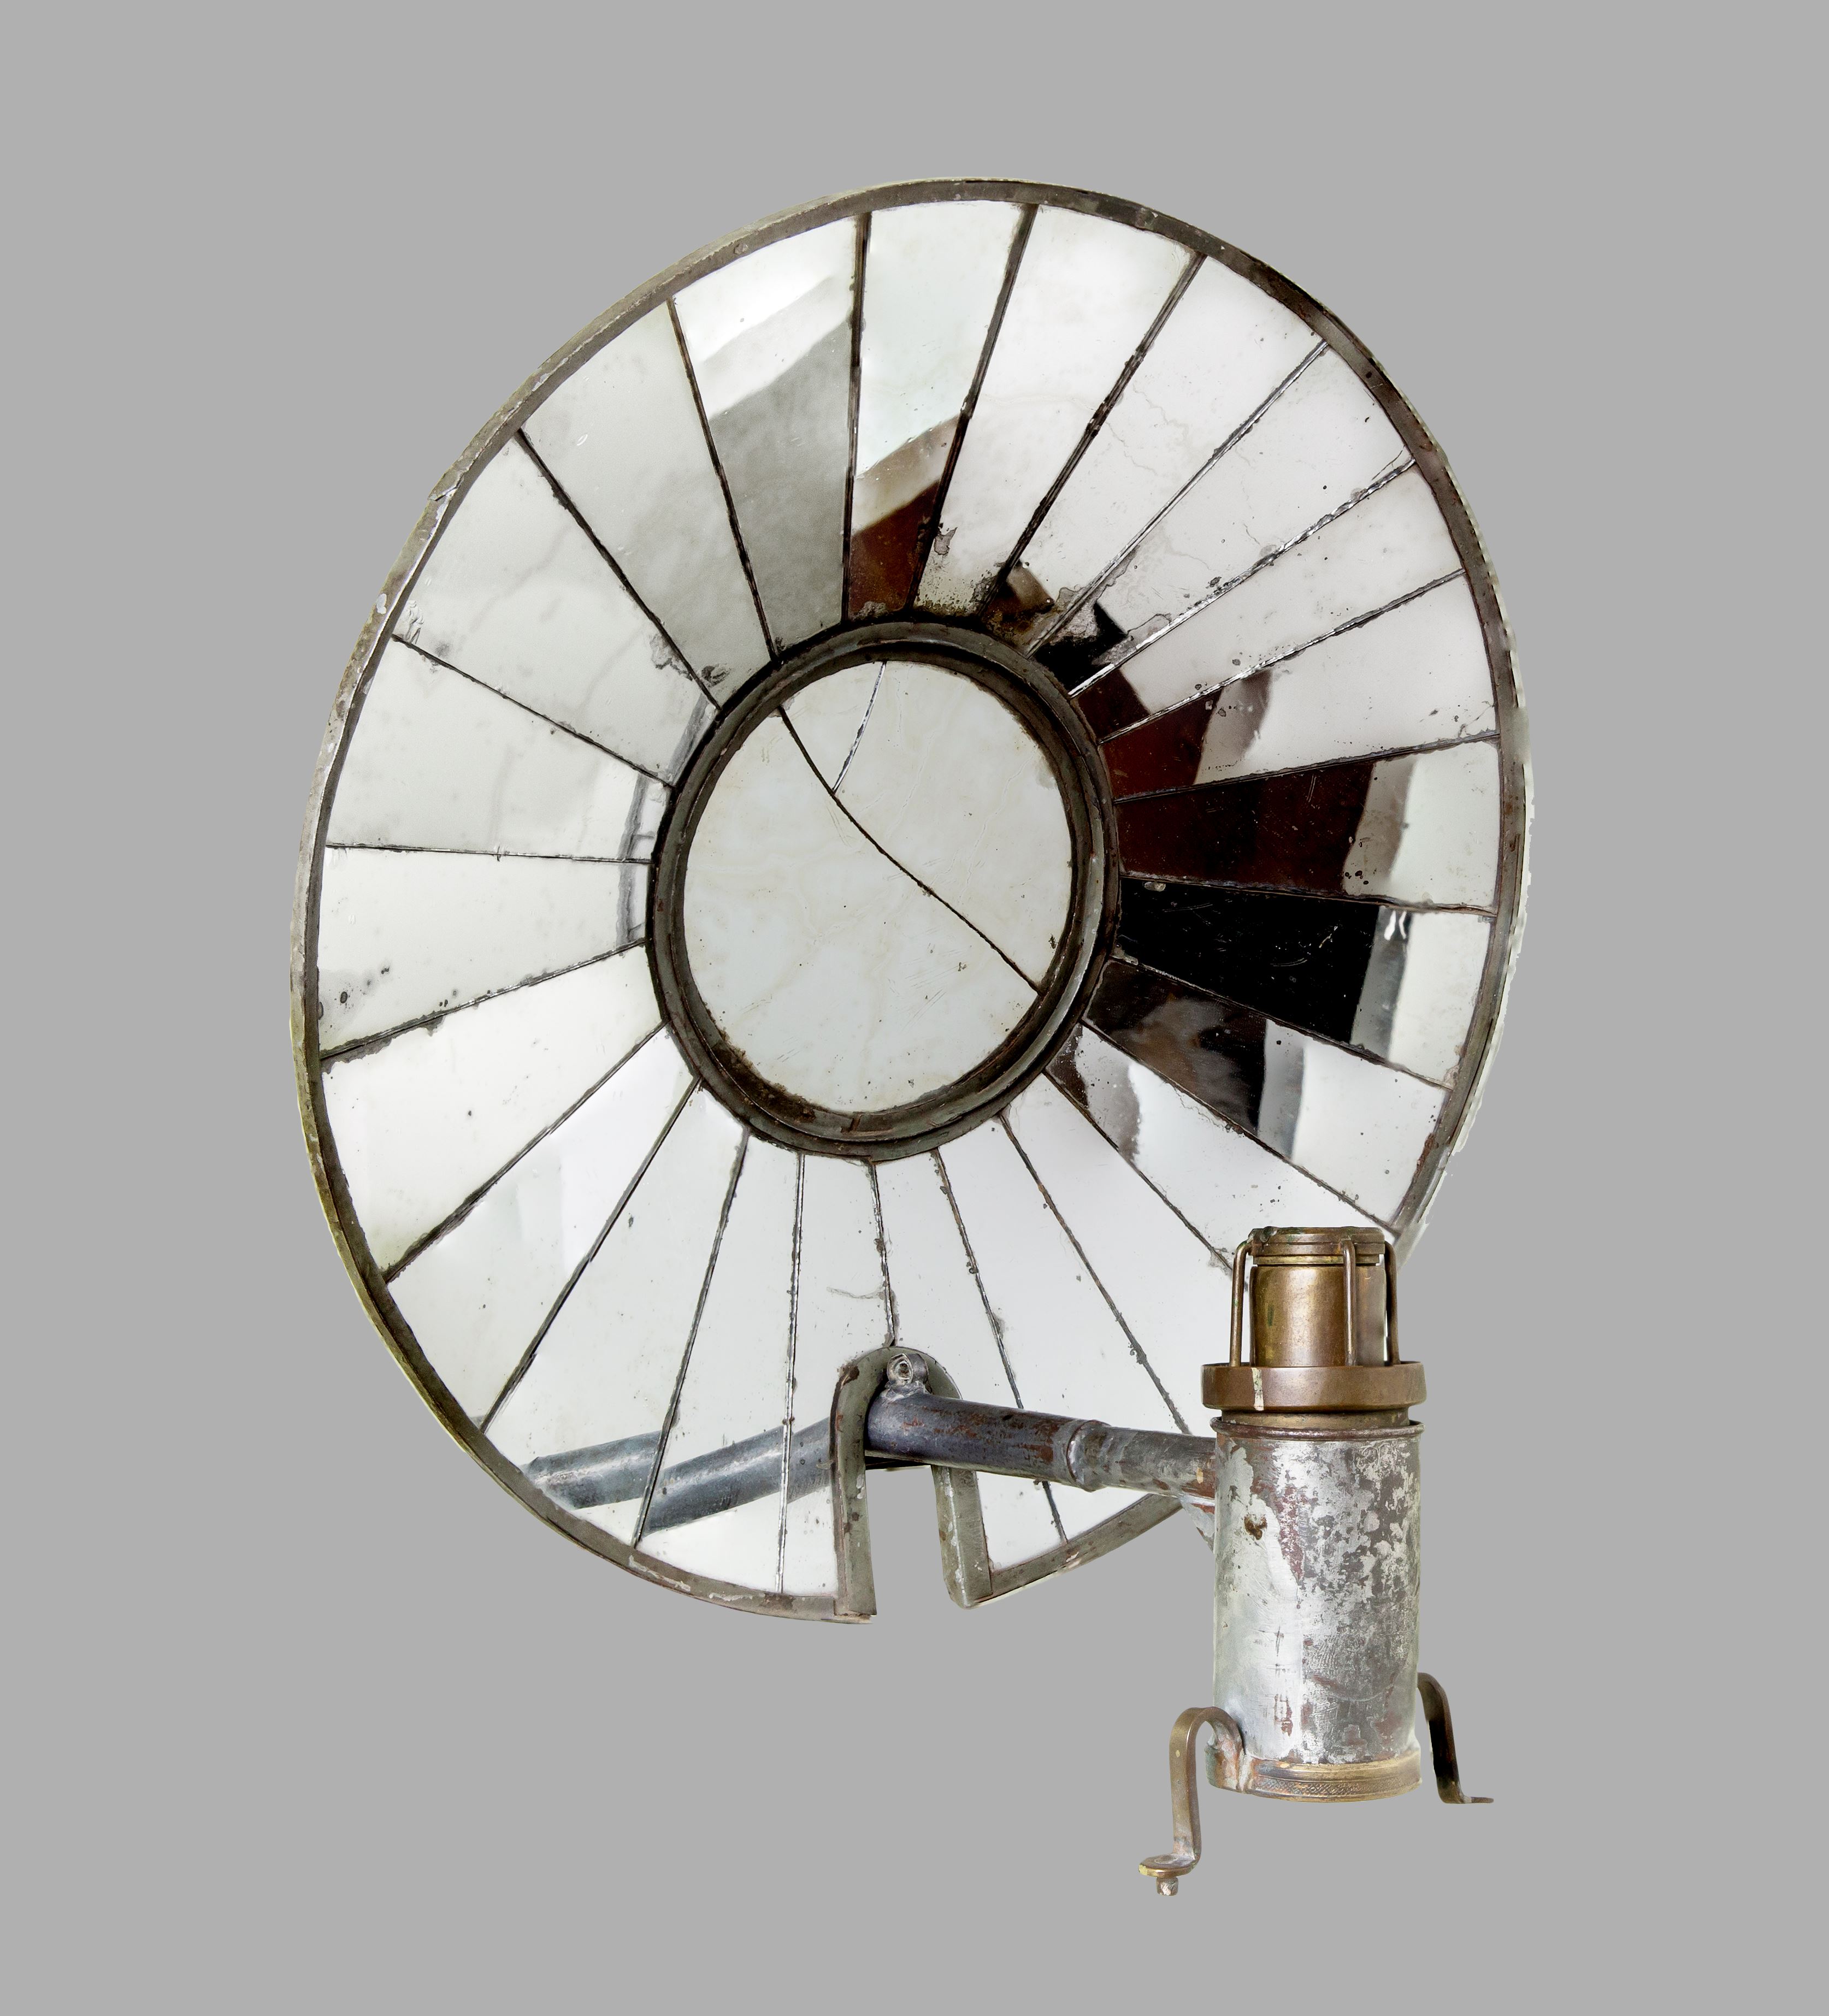 Лампа масляная навесная с зеркальным отражателем, на 1 горелку. Россия. 1820-е. Жесть, латунь, металл, стекло зеркальное; литьё, окраска. Предположительно, эта лампа использовалась для освещения задника